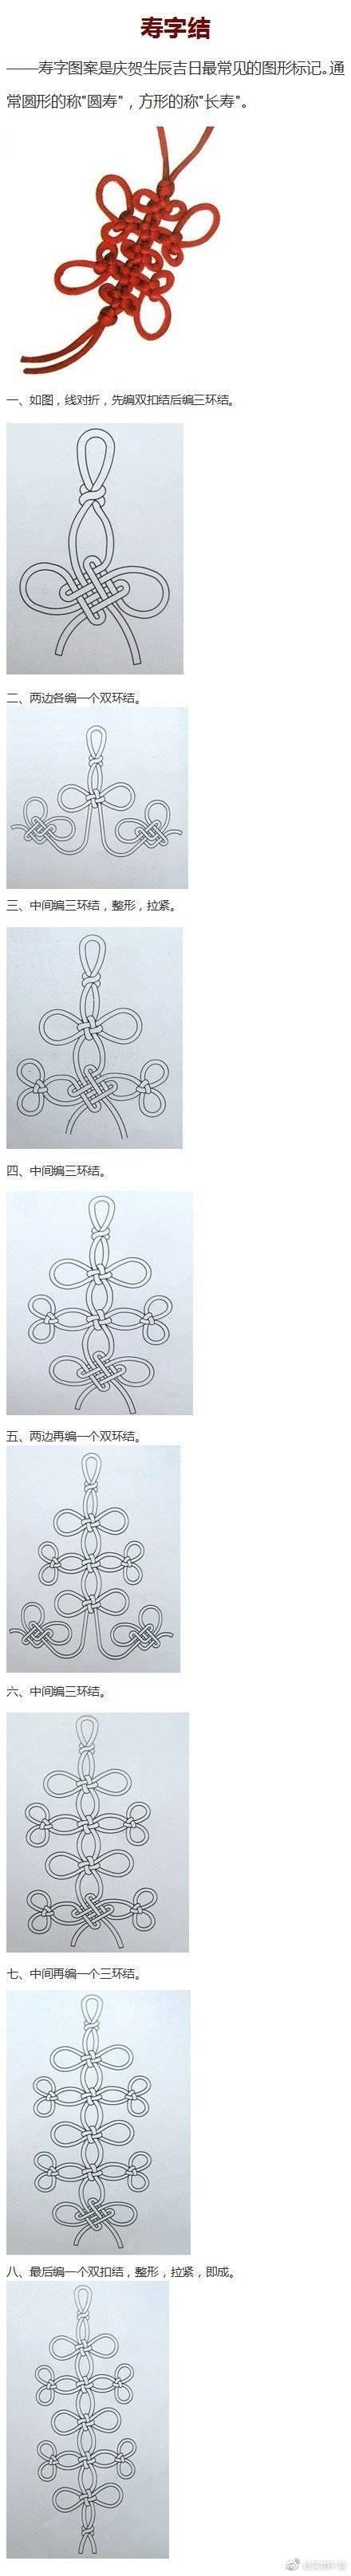 手把手教你9种中国结中的基本结式